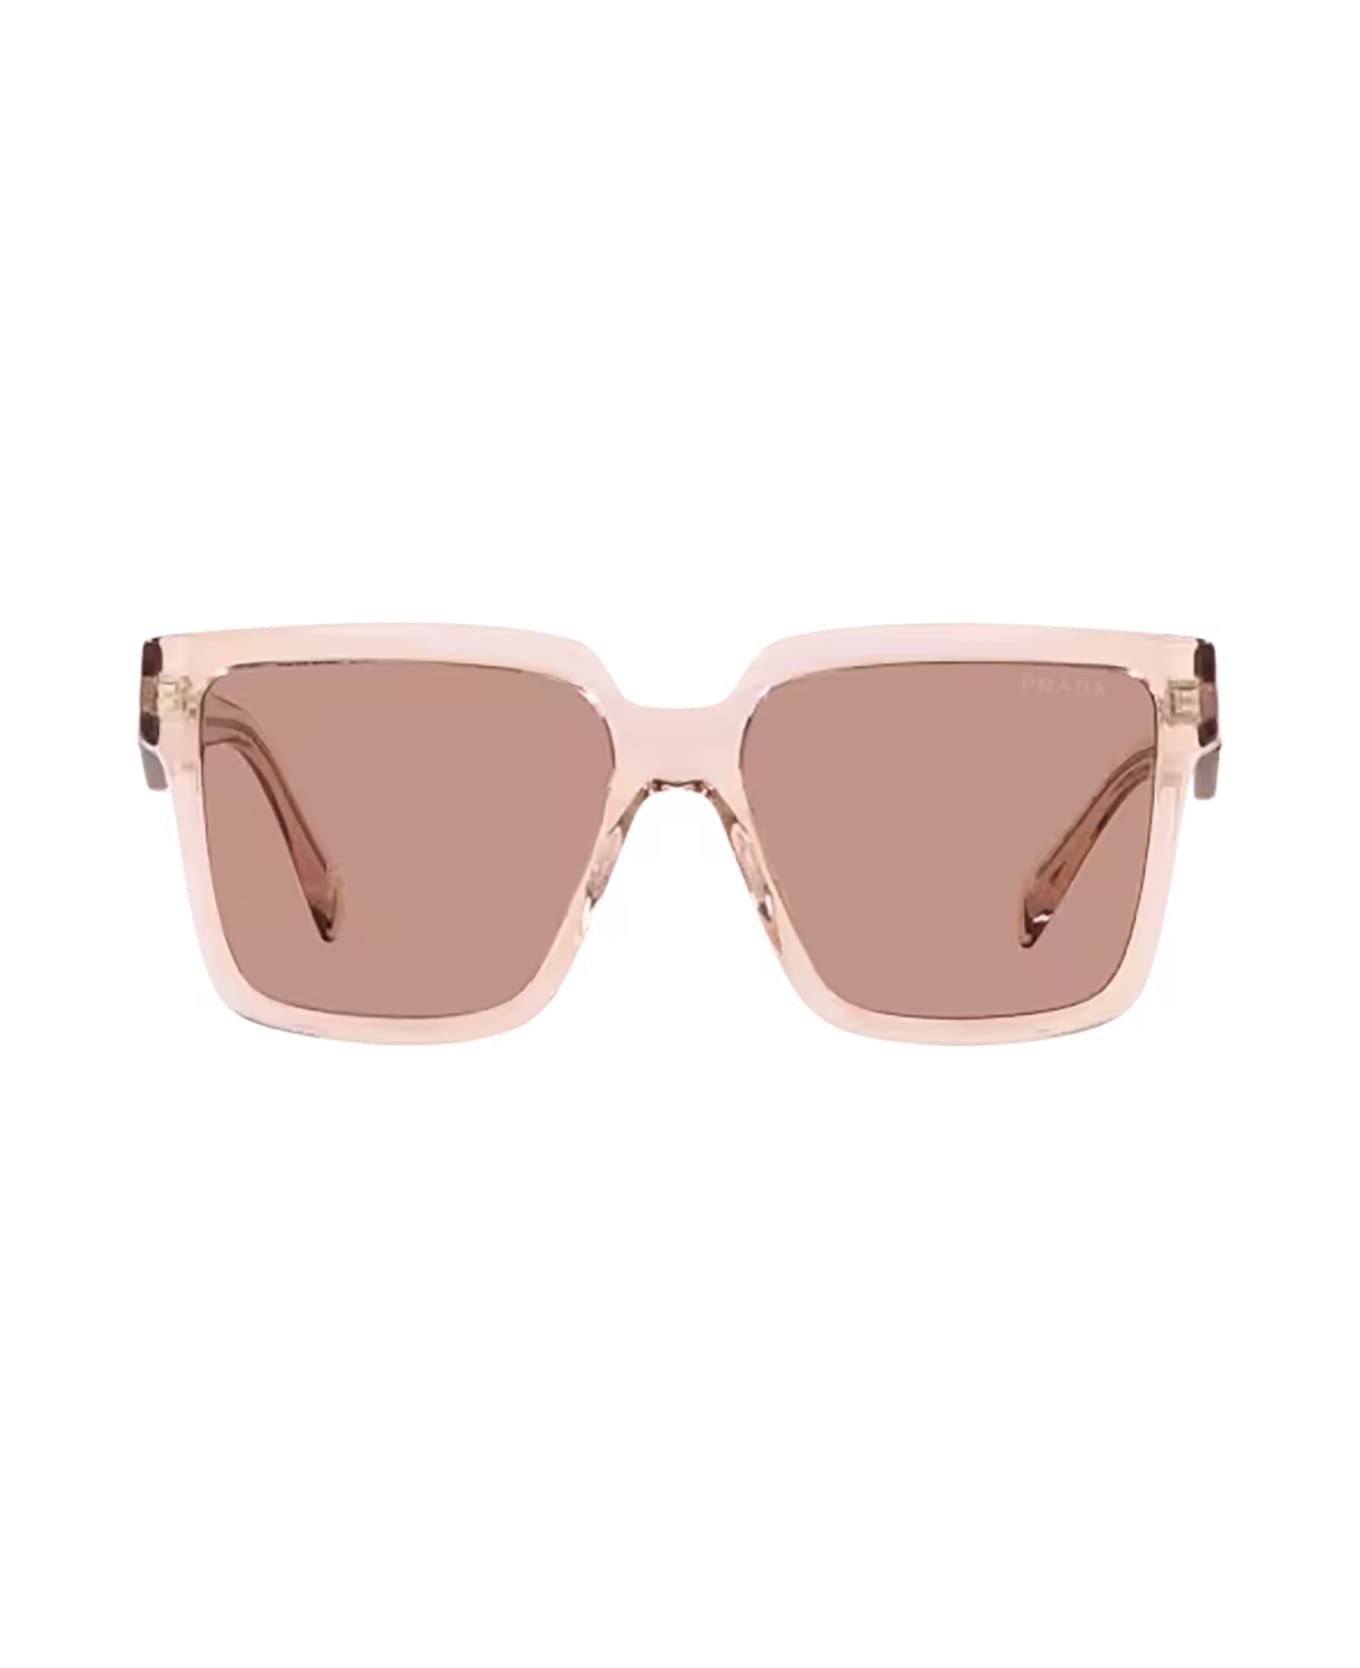 Prada Eyewear Pr 24zs Geranium / Petal Crystal Sunglasses - Geranium / Petal Crystal